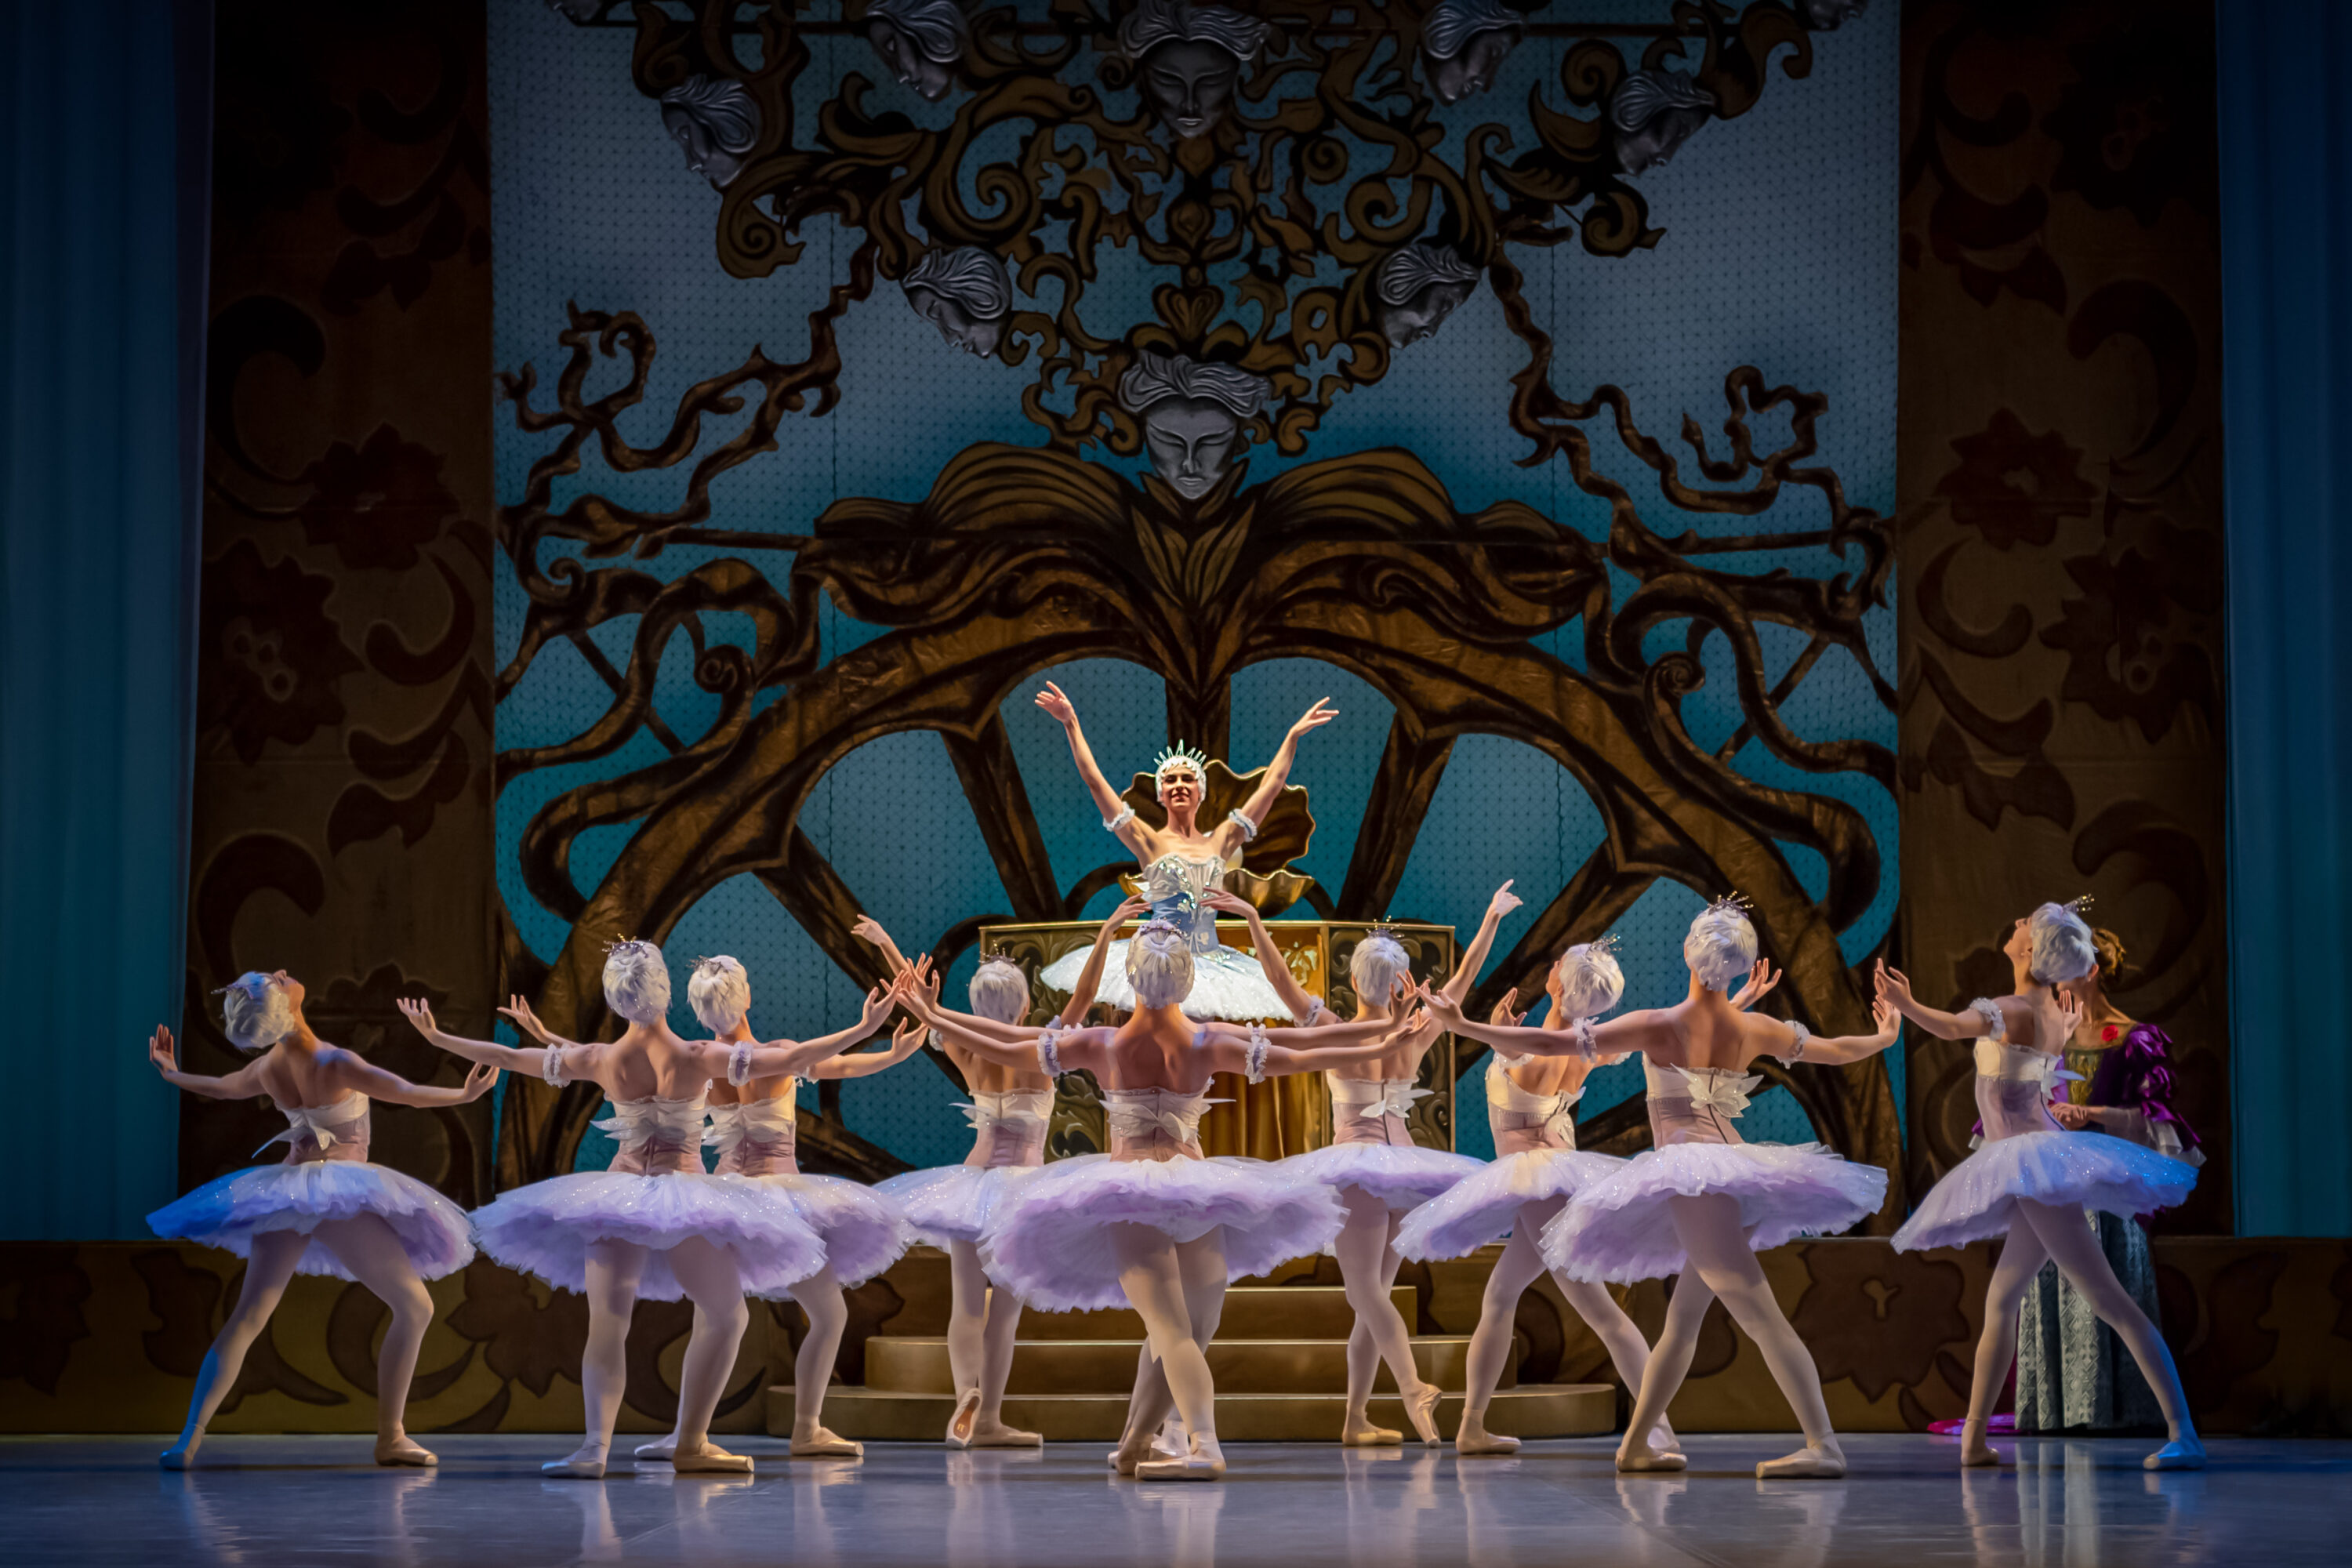 The Sleeping Beauty West Australian Ballet